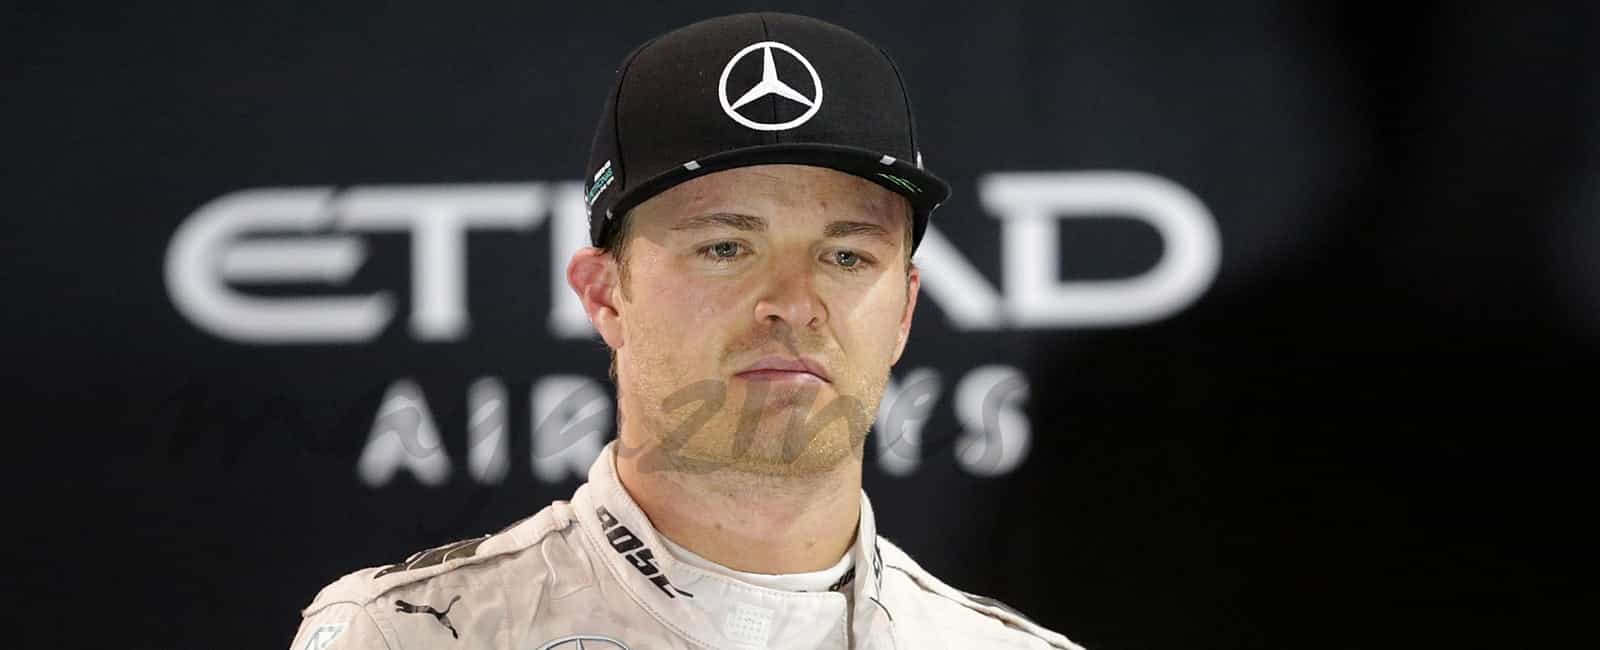 Nico Rosberg consigue su primer título de Campeón del Mundo de Fórmula 1